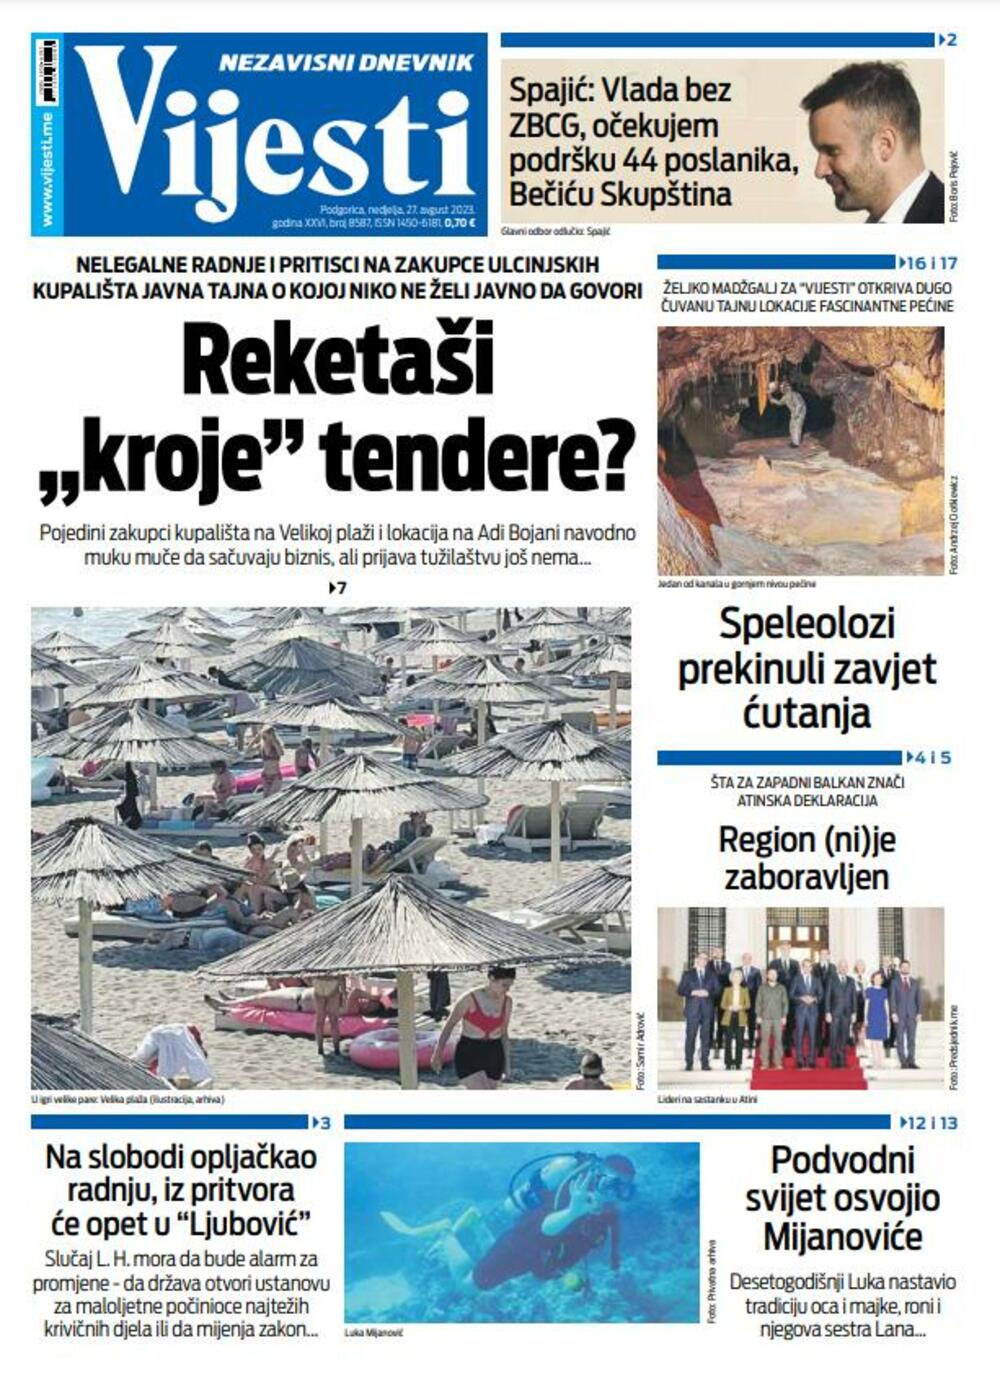 Naslovna strana "Vijesti" za 27. avgust 2023., Foto: Vijesti